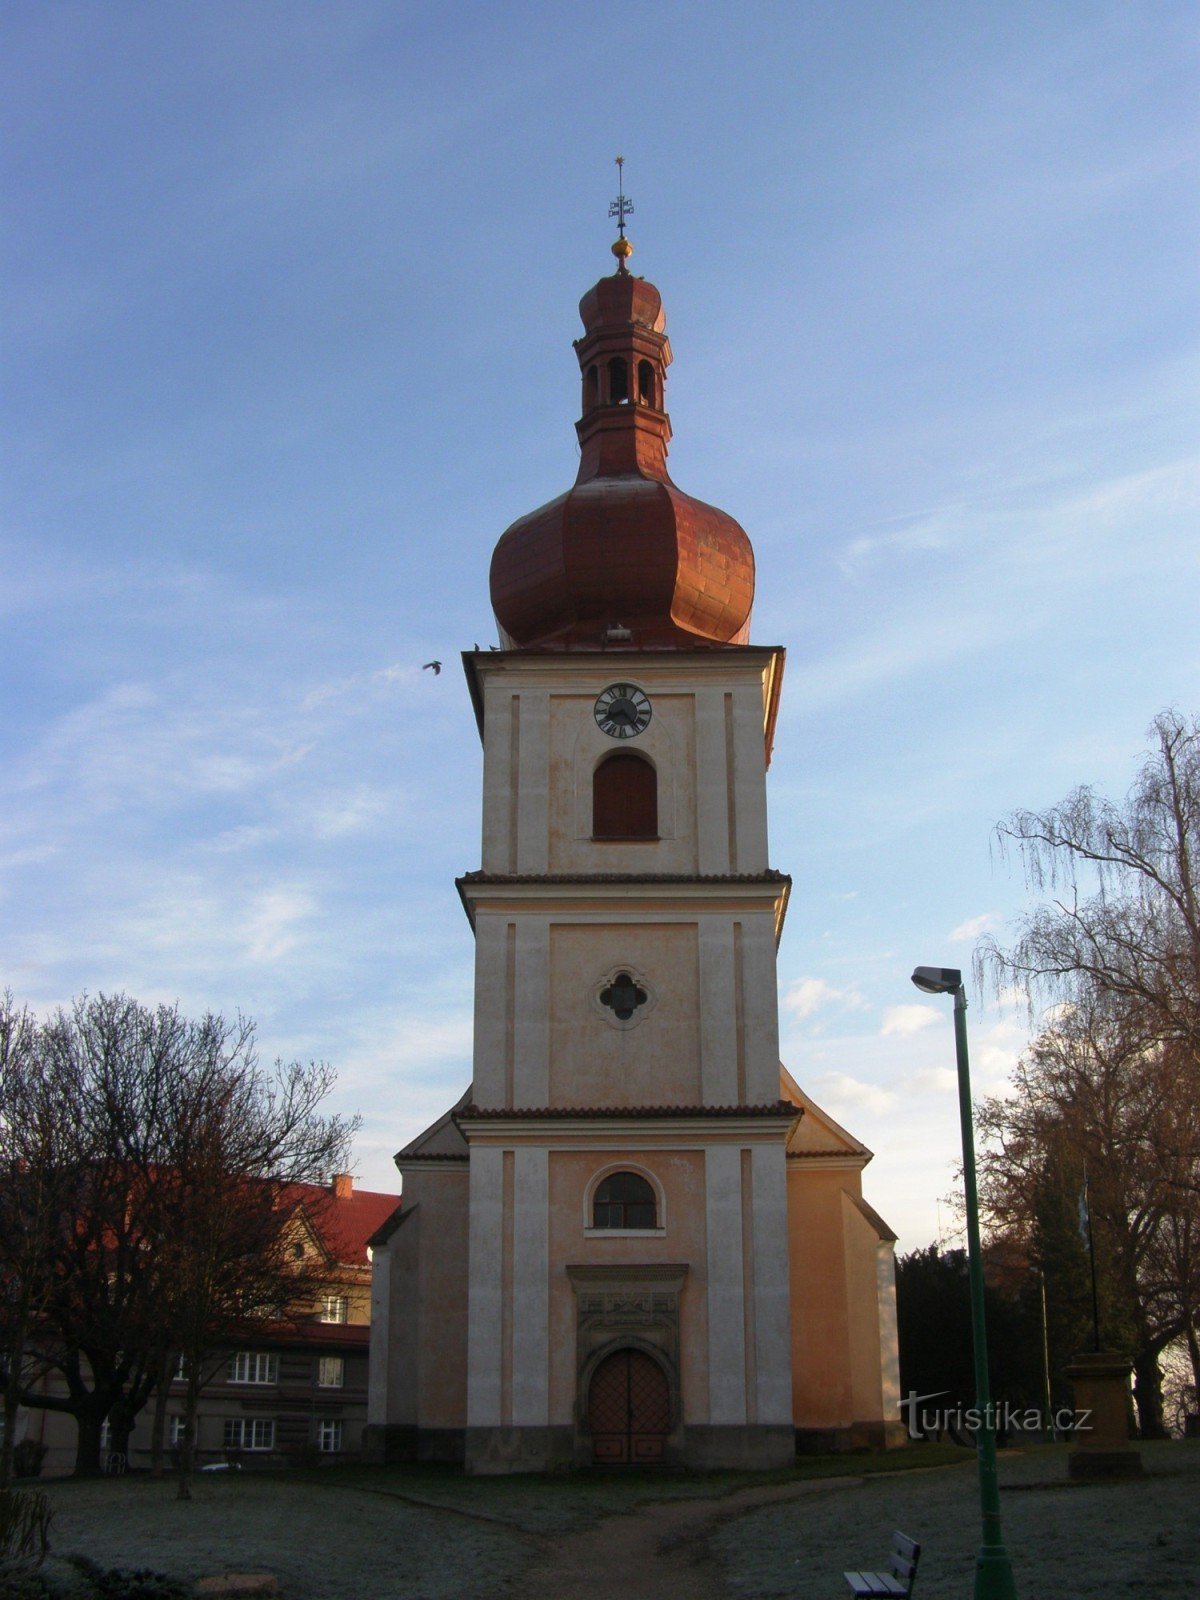 Jaroměř - church of St. Jakub